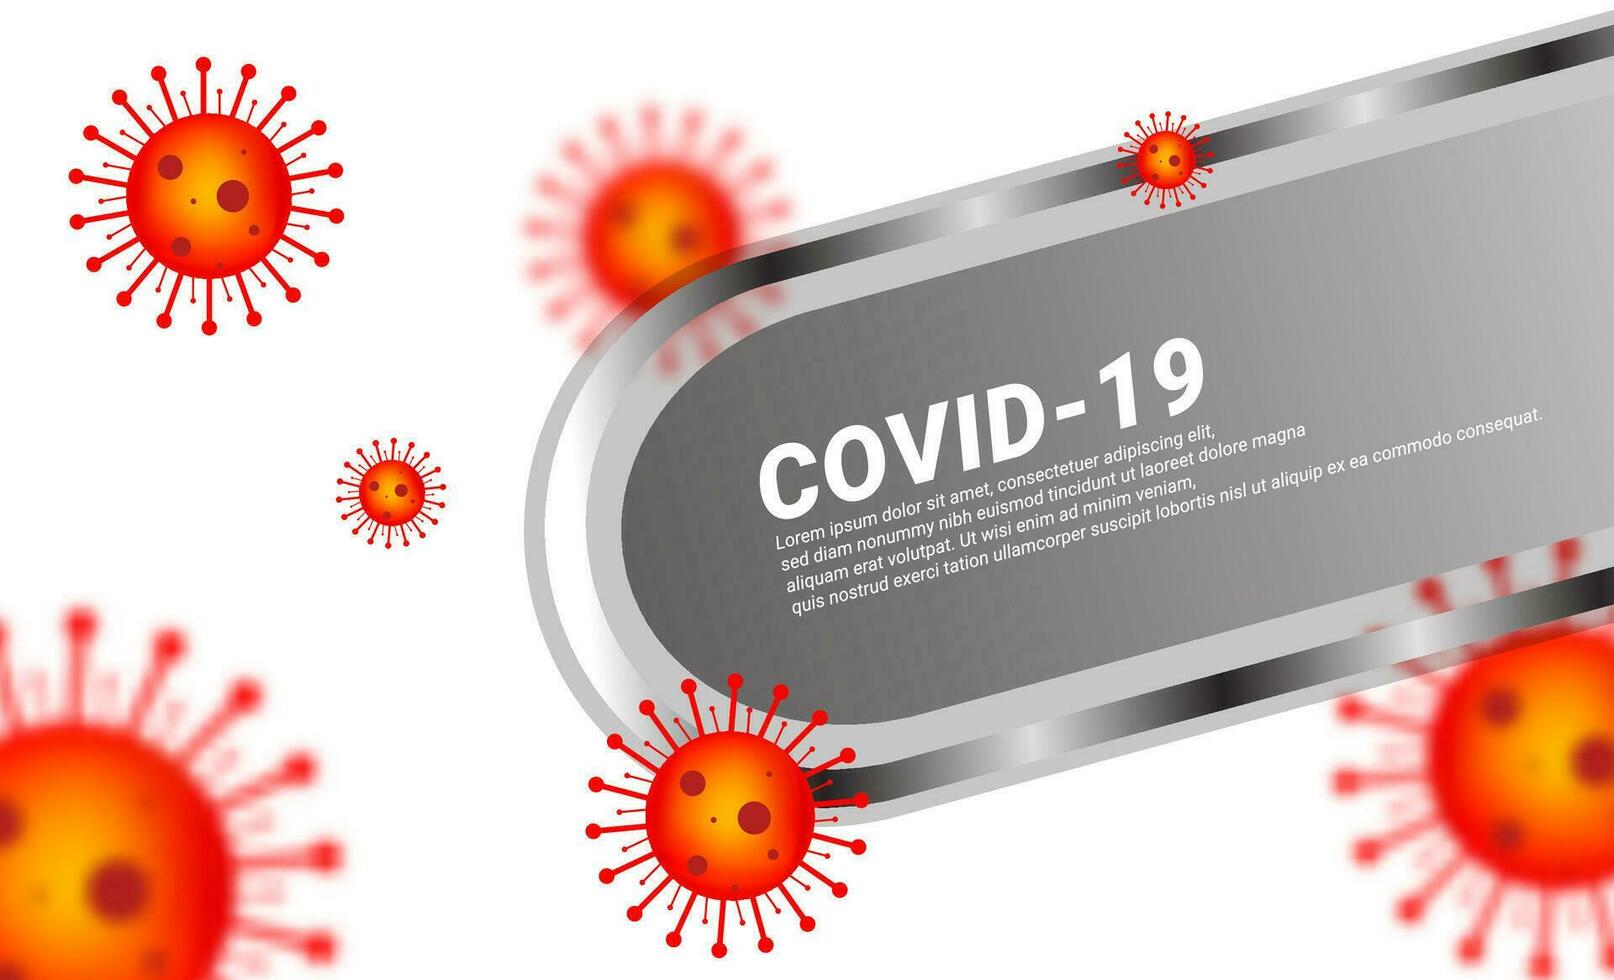 das Corona Virus-Thema Design ist hell Rot, geeignet zum Hintergründe, Tapeten, Netze, Poster, Abdeckungen, Zeitschriften, usw. vektor